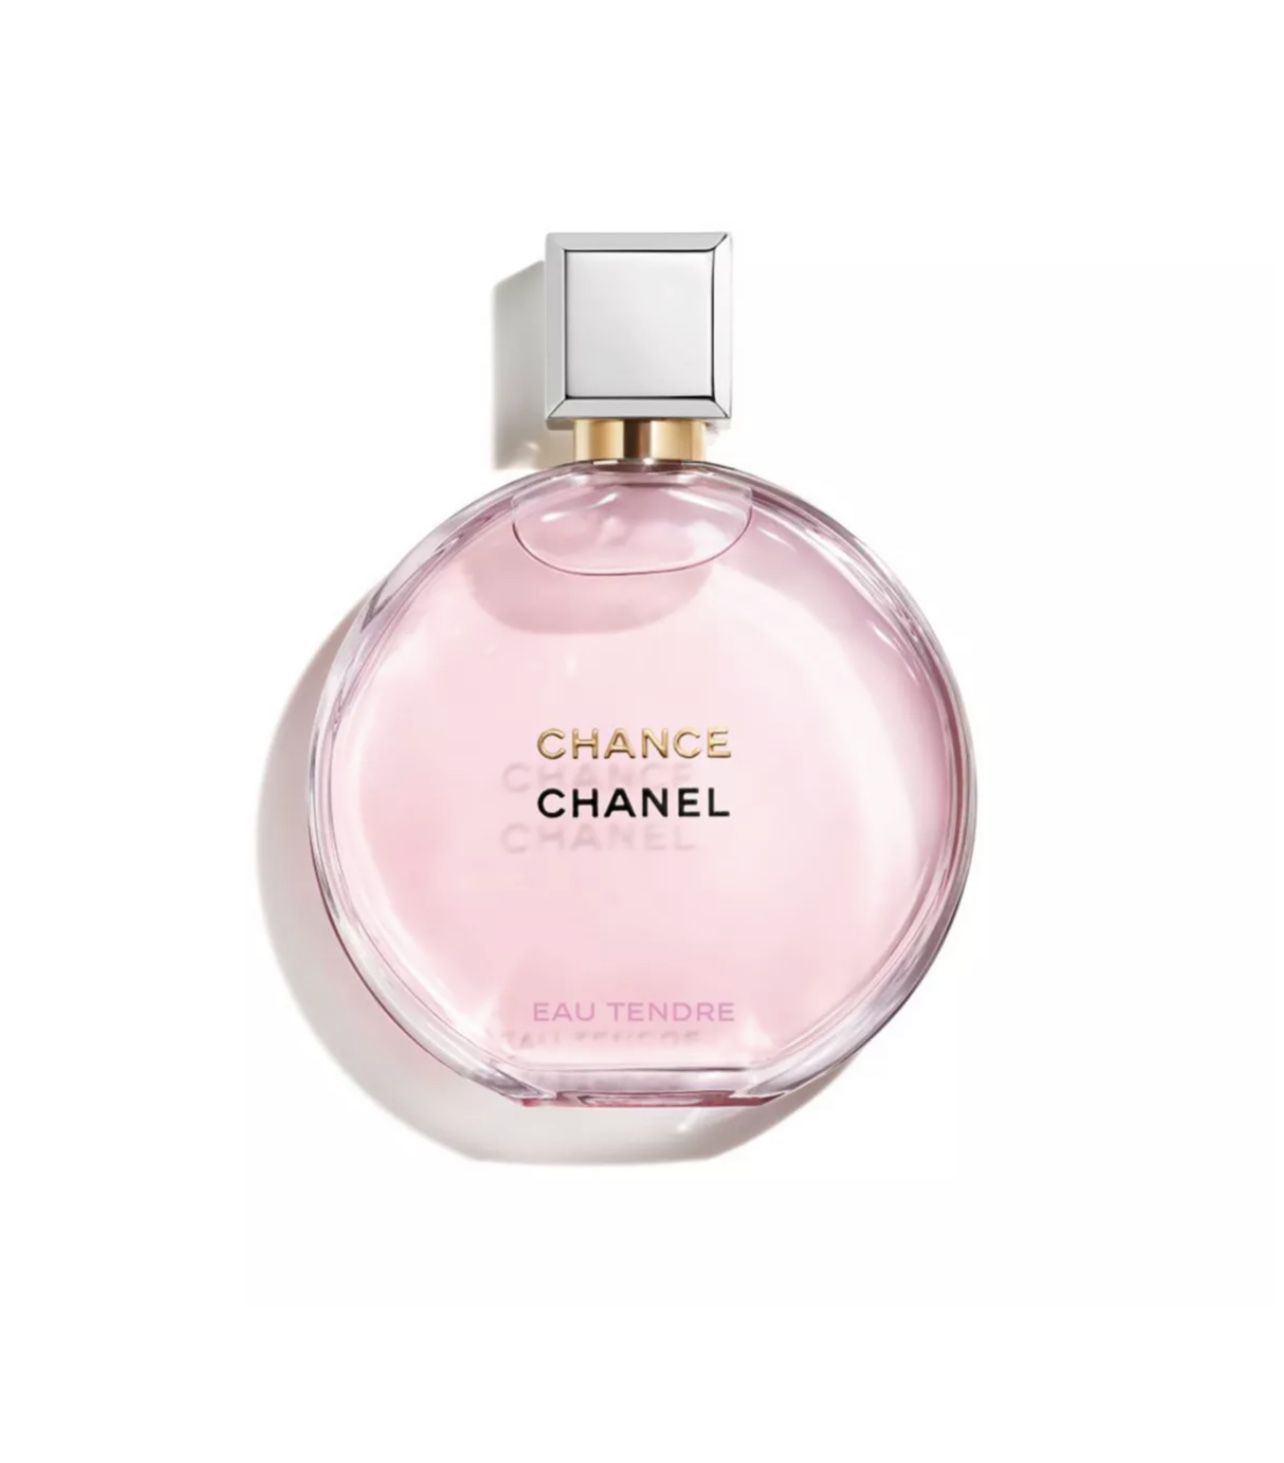 CHANEL CHANCE EAU TENDRE Eau de Parfum Spray, 3.4-oz